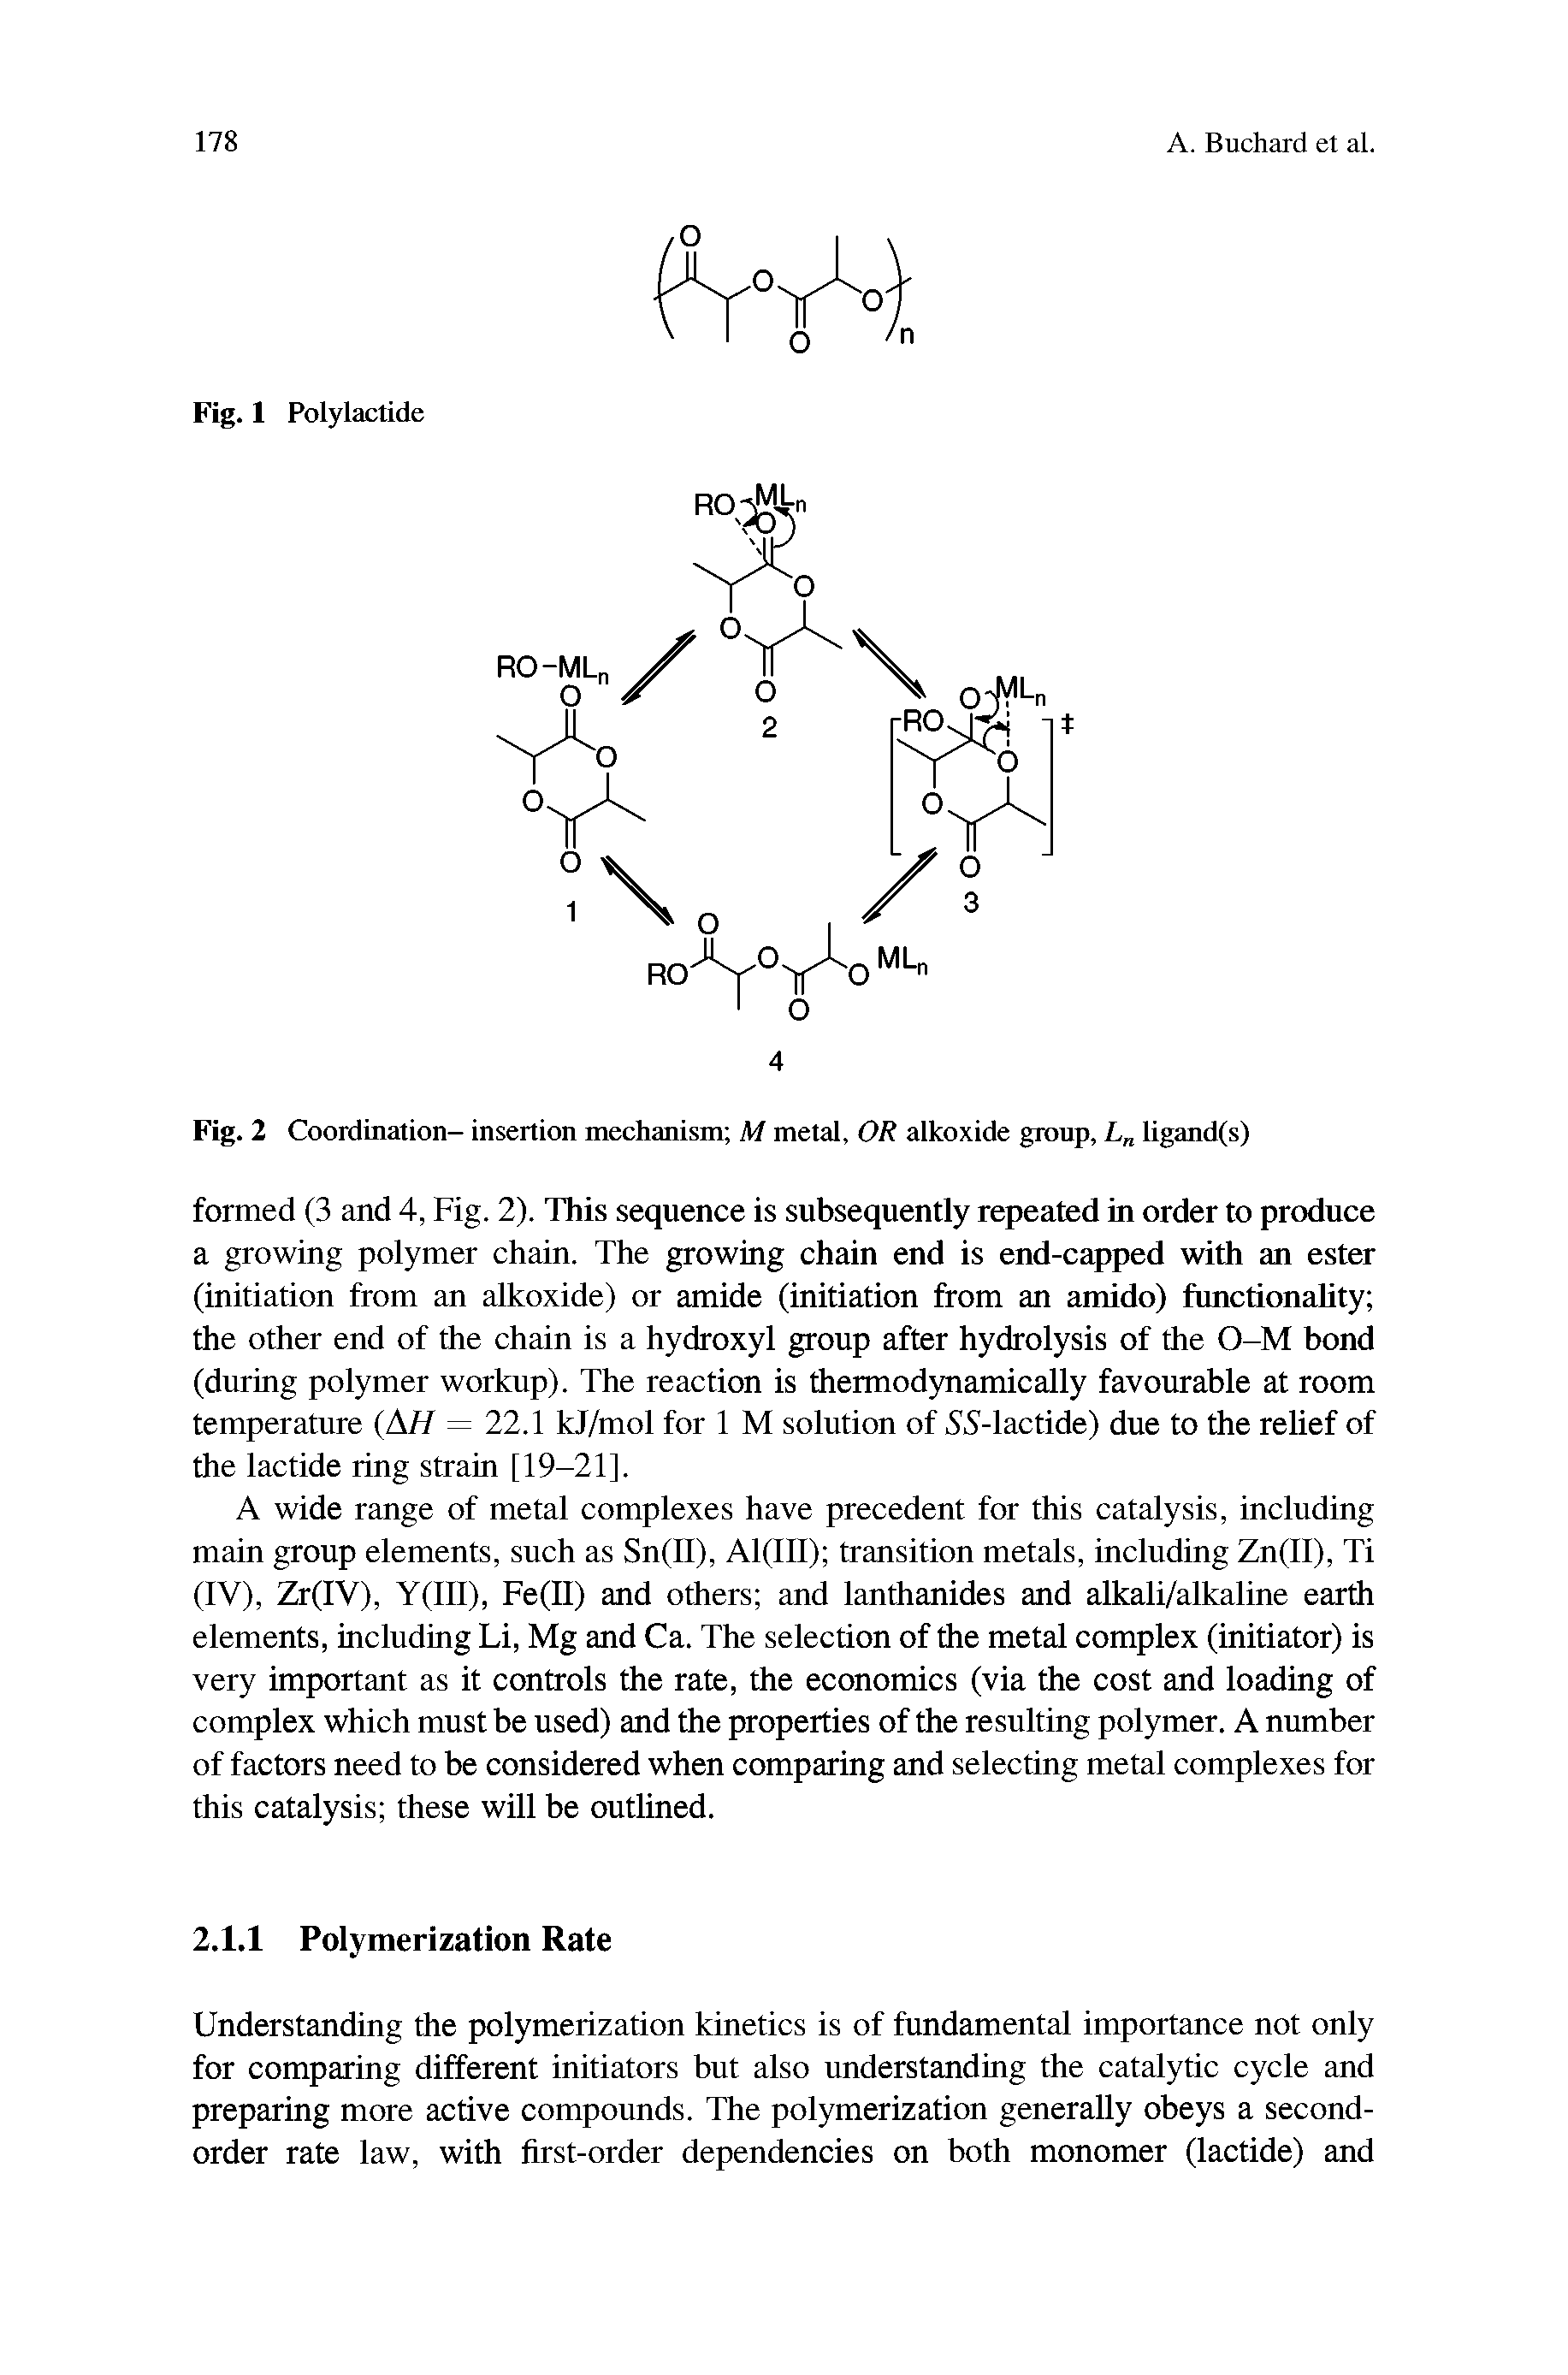 Fig. 2 Coordination- insertion mechanism M metal, OR alkoxide group, L ligand(s)...